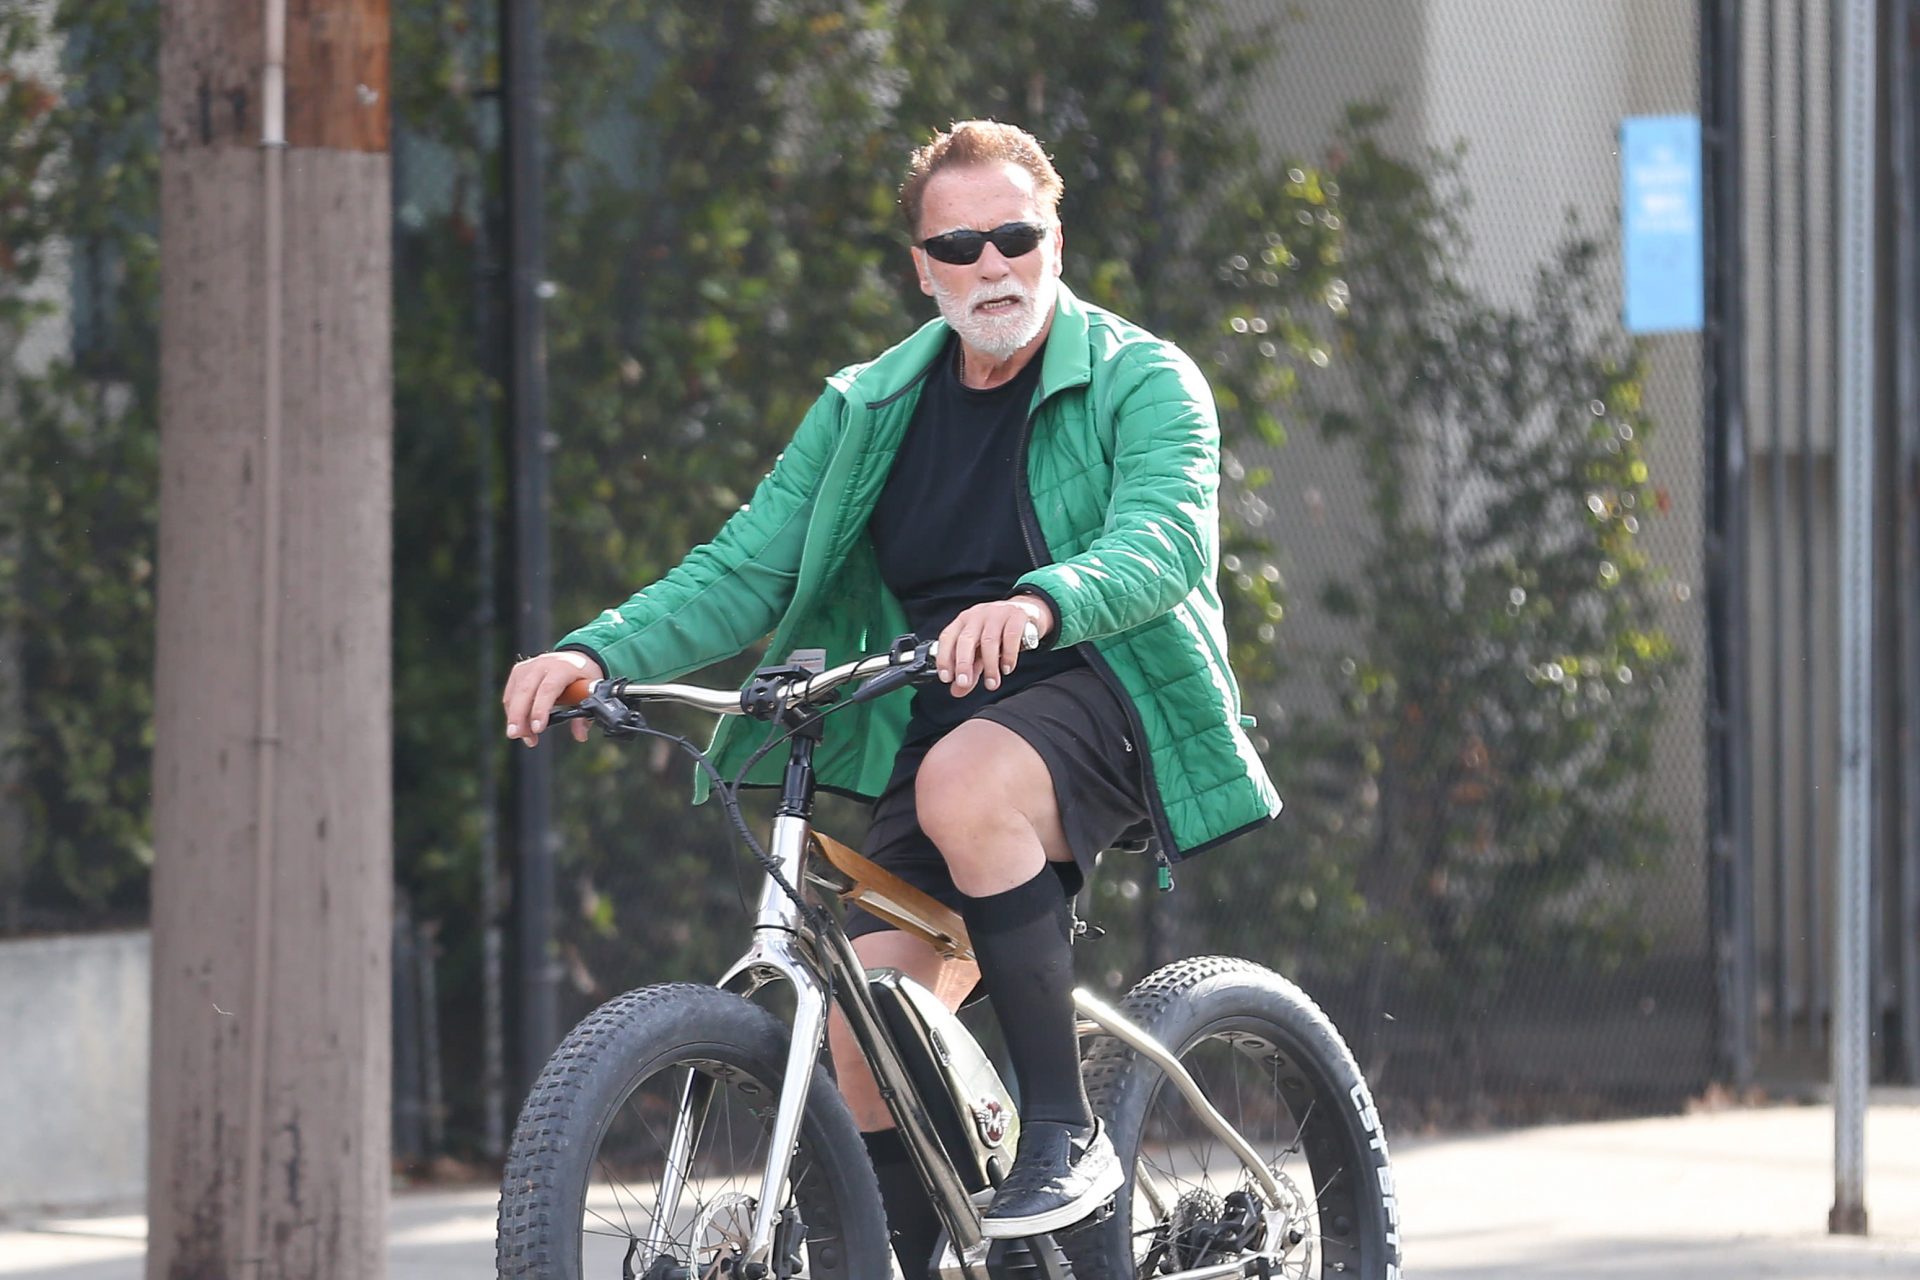 2. Arnold Schwarzenegger